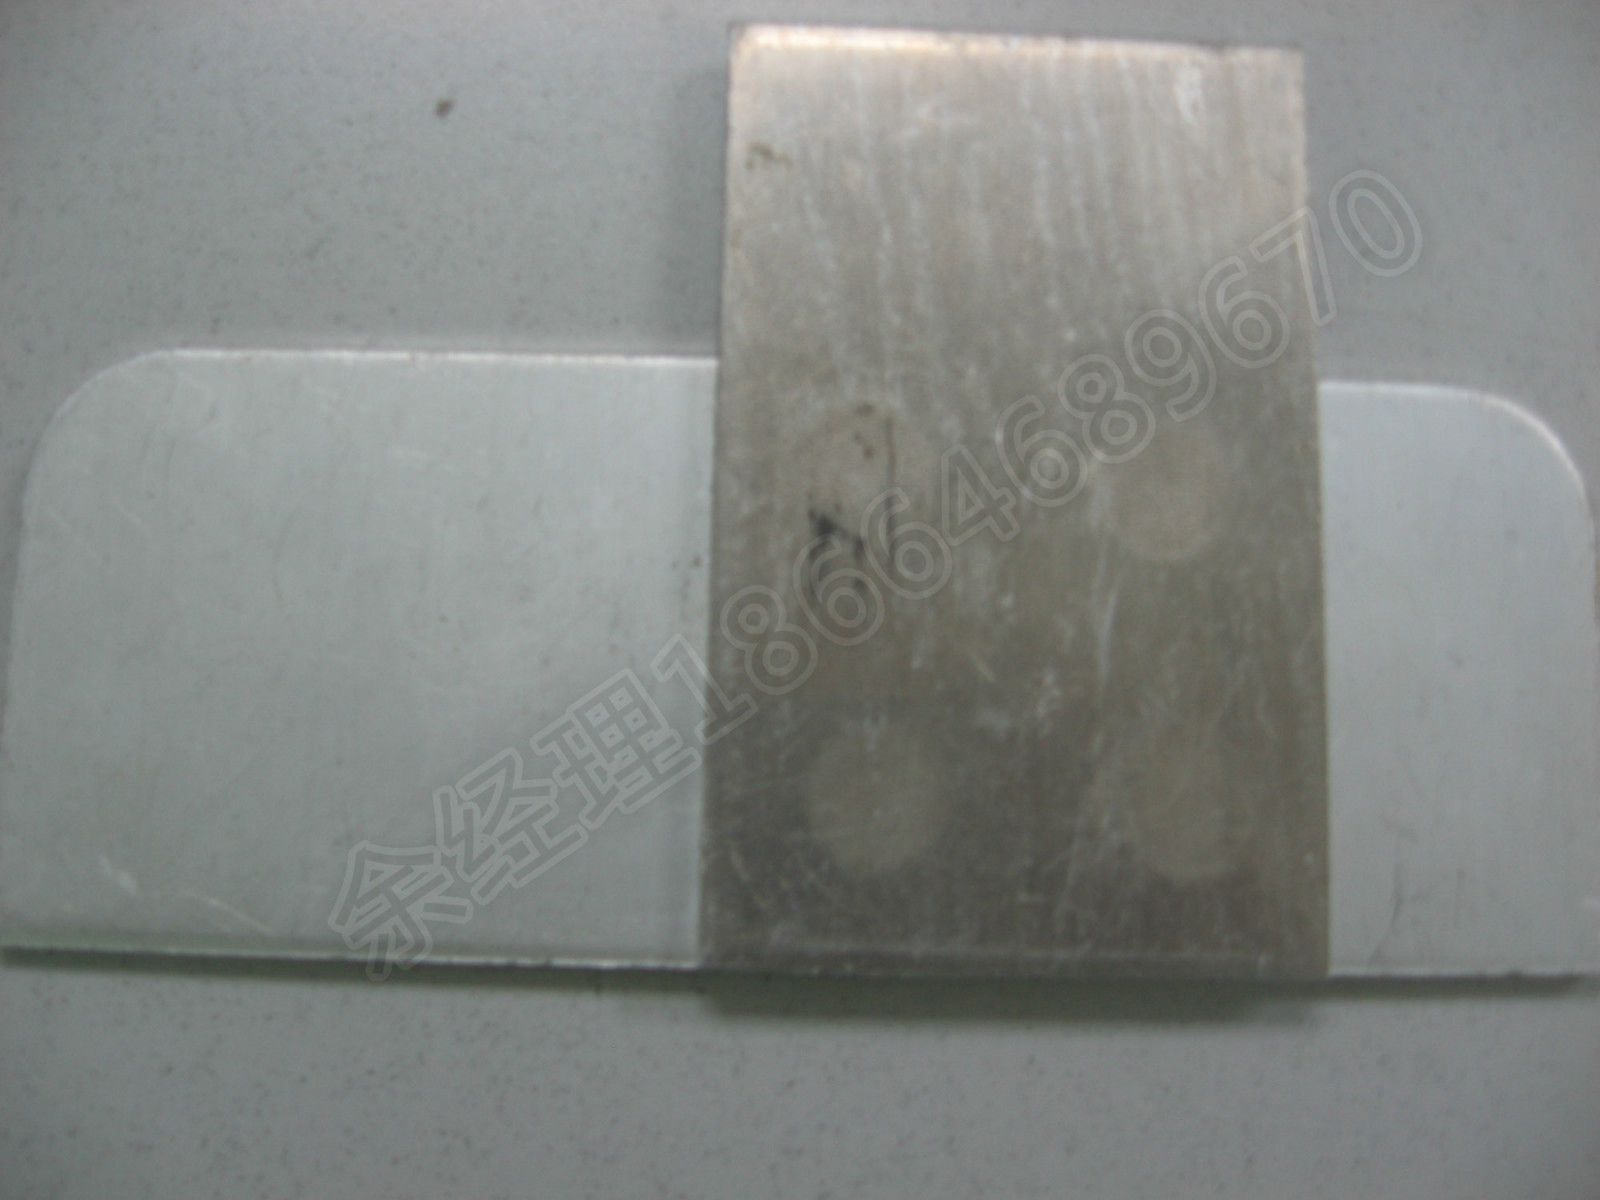 Aluminium Spot Welding Sample